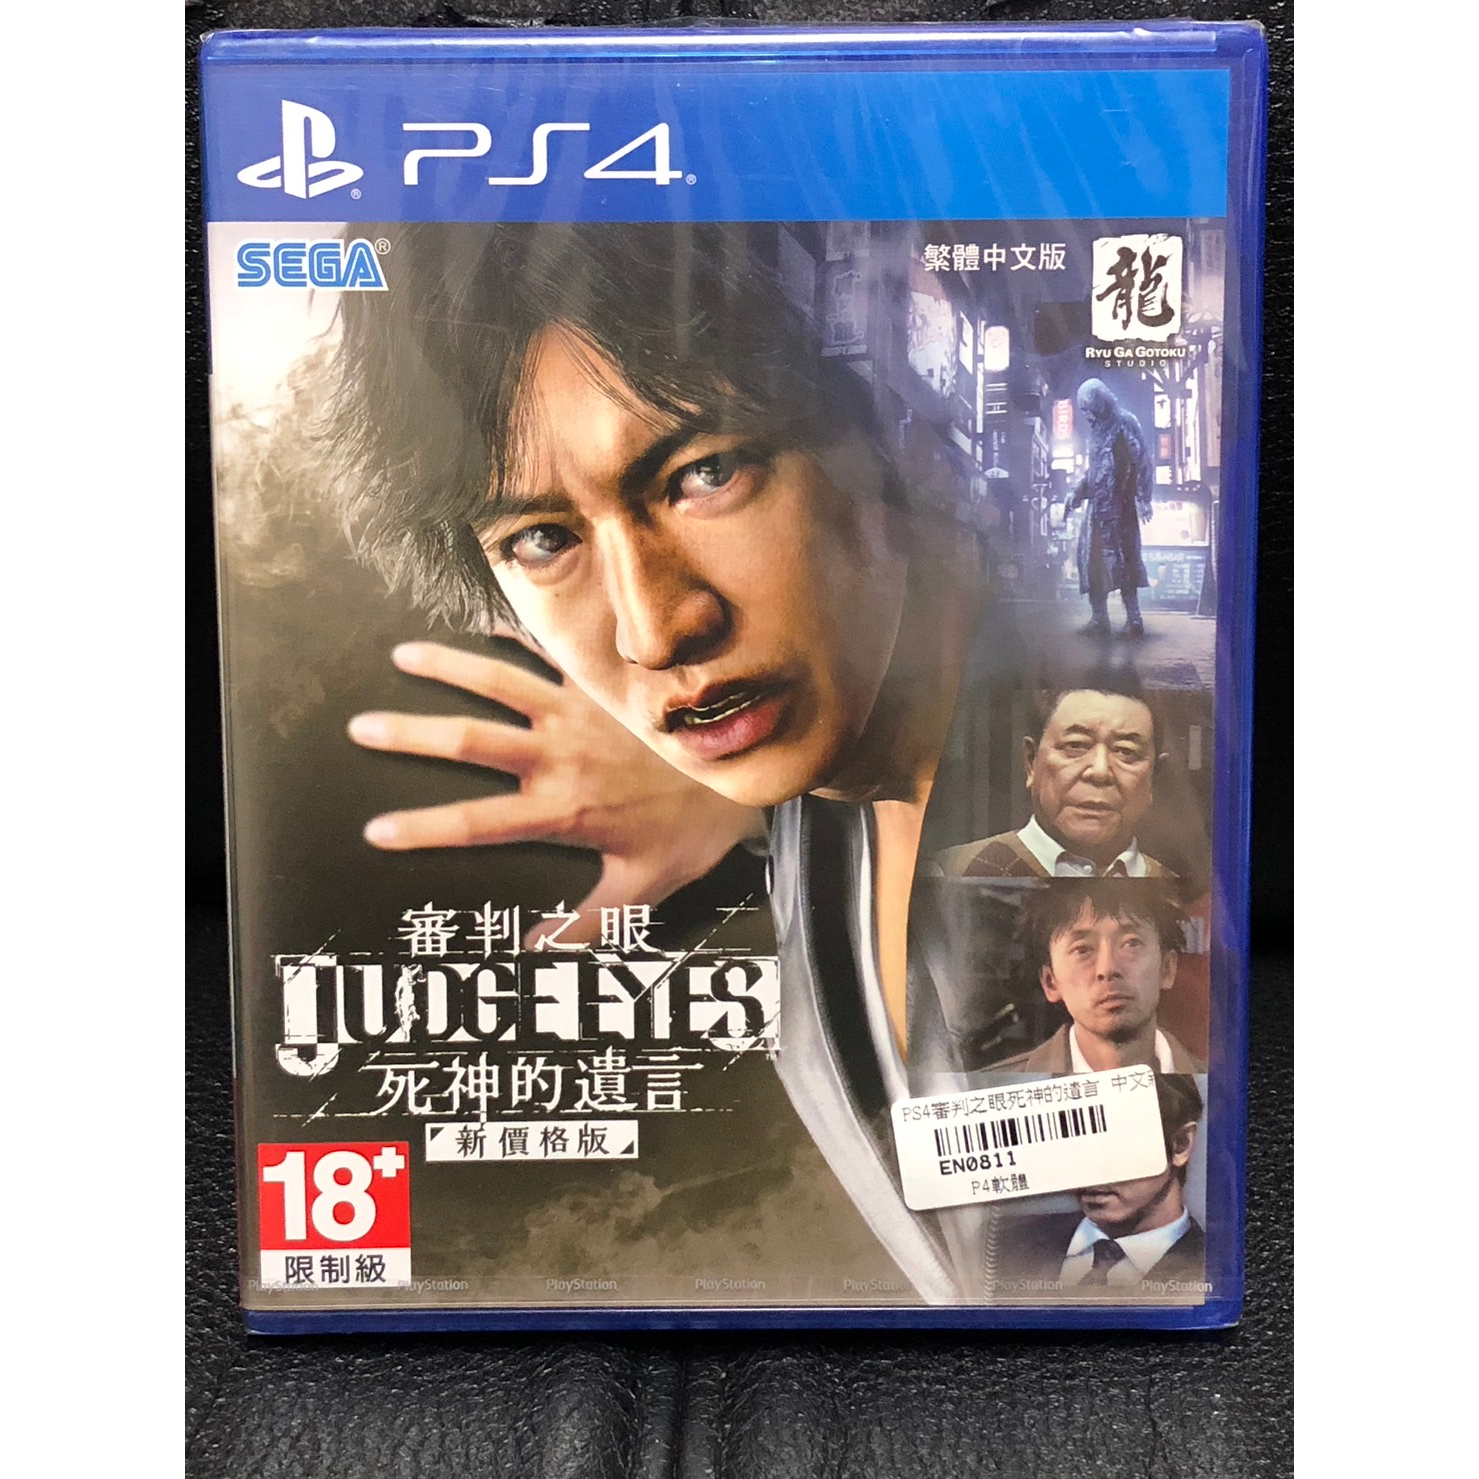 全新 審判之眼 死神的遺言 新價格版 繁體中文版 JUDGE EYES PS4 遊戲